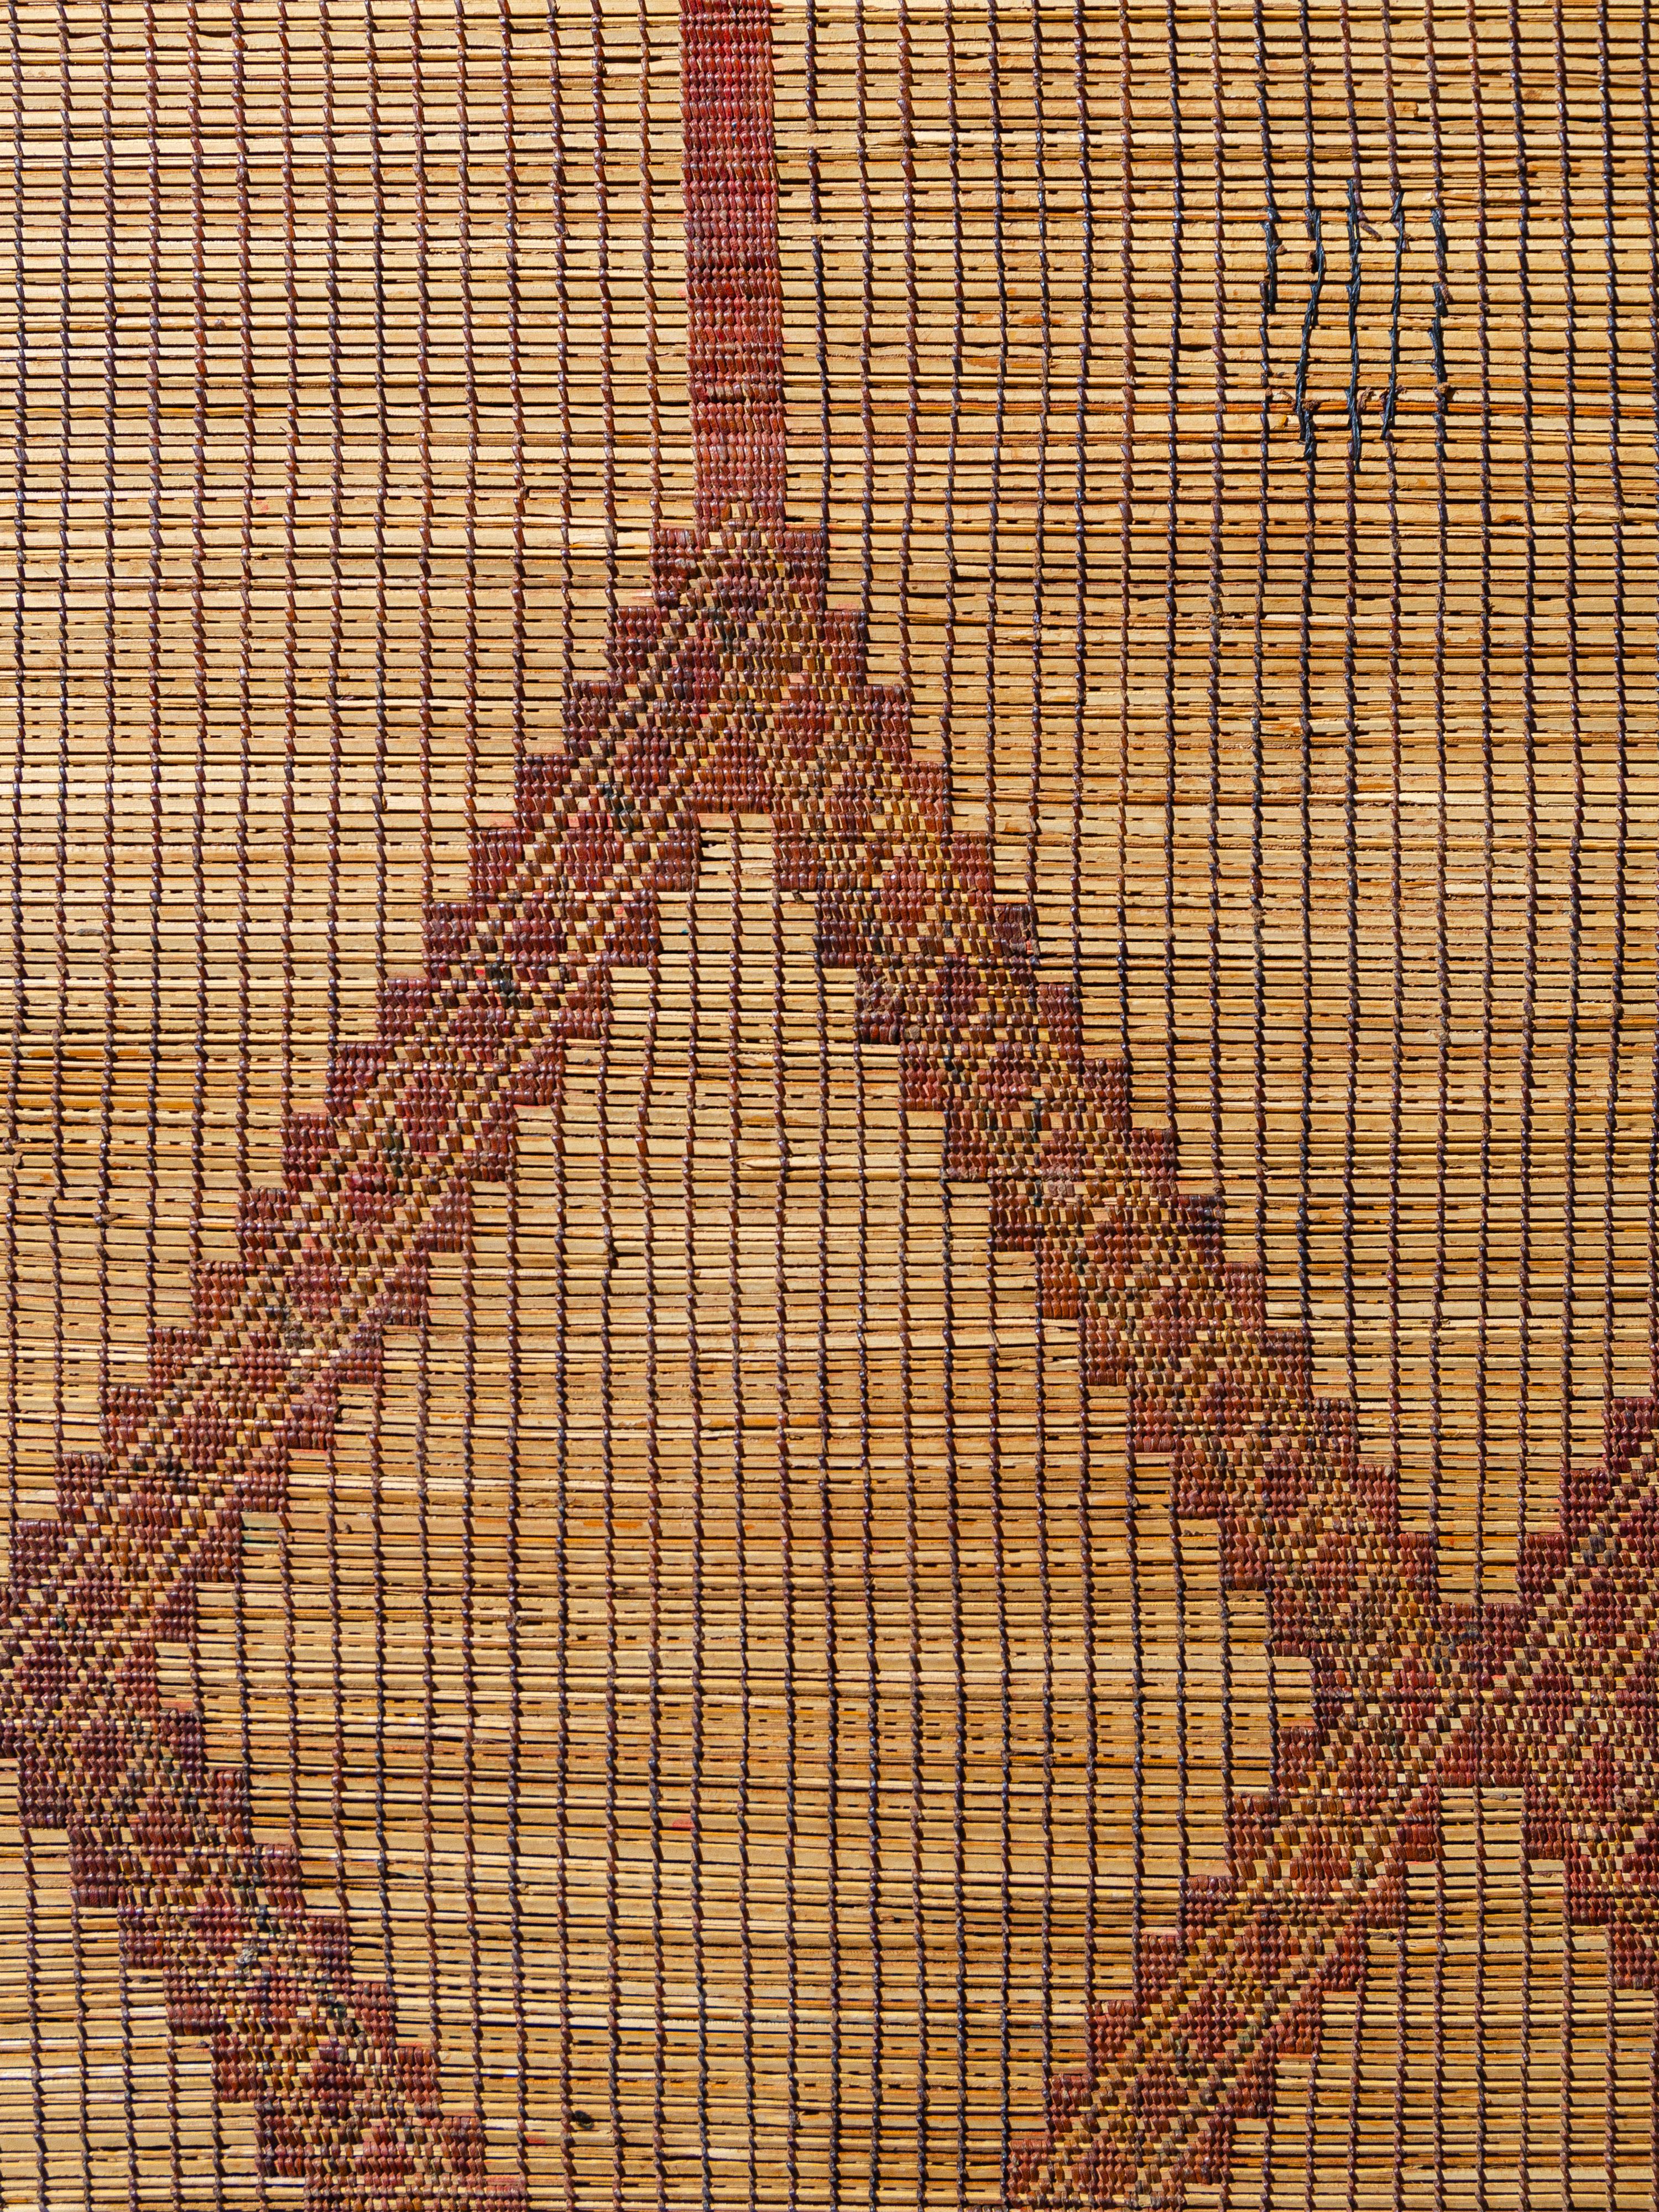 Diese von den nomadischen Tuareg-Stämmen Mauretaniens aus Palmschilf und Leder gewebten Matten bieten eine strukturelle Alternative zu den traditionellen gewebten Textilbodenbelägen. Dieses Stück weist ein recht symmetrisches, markantes Rautenmuster